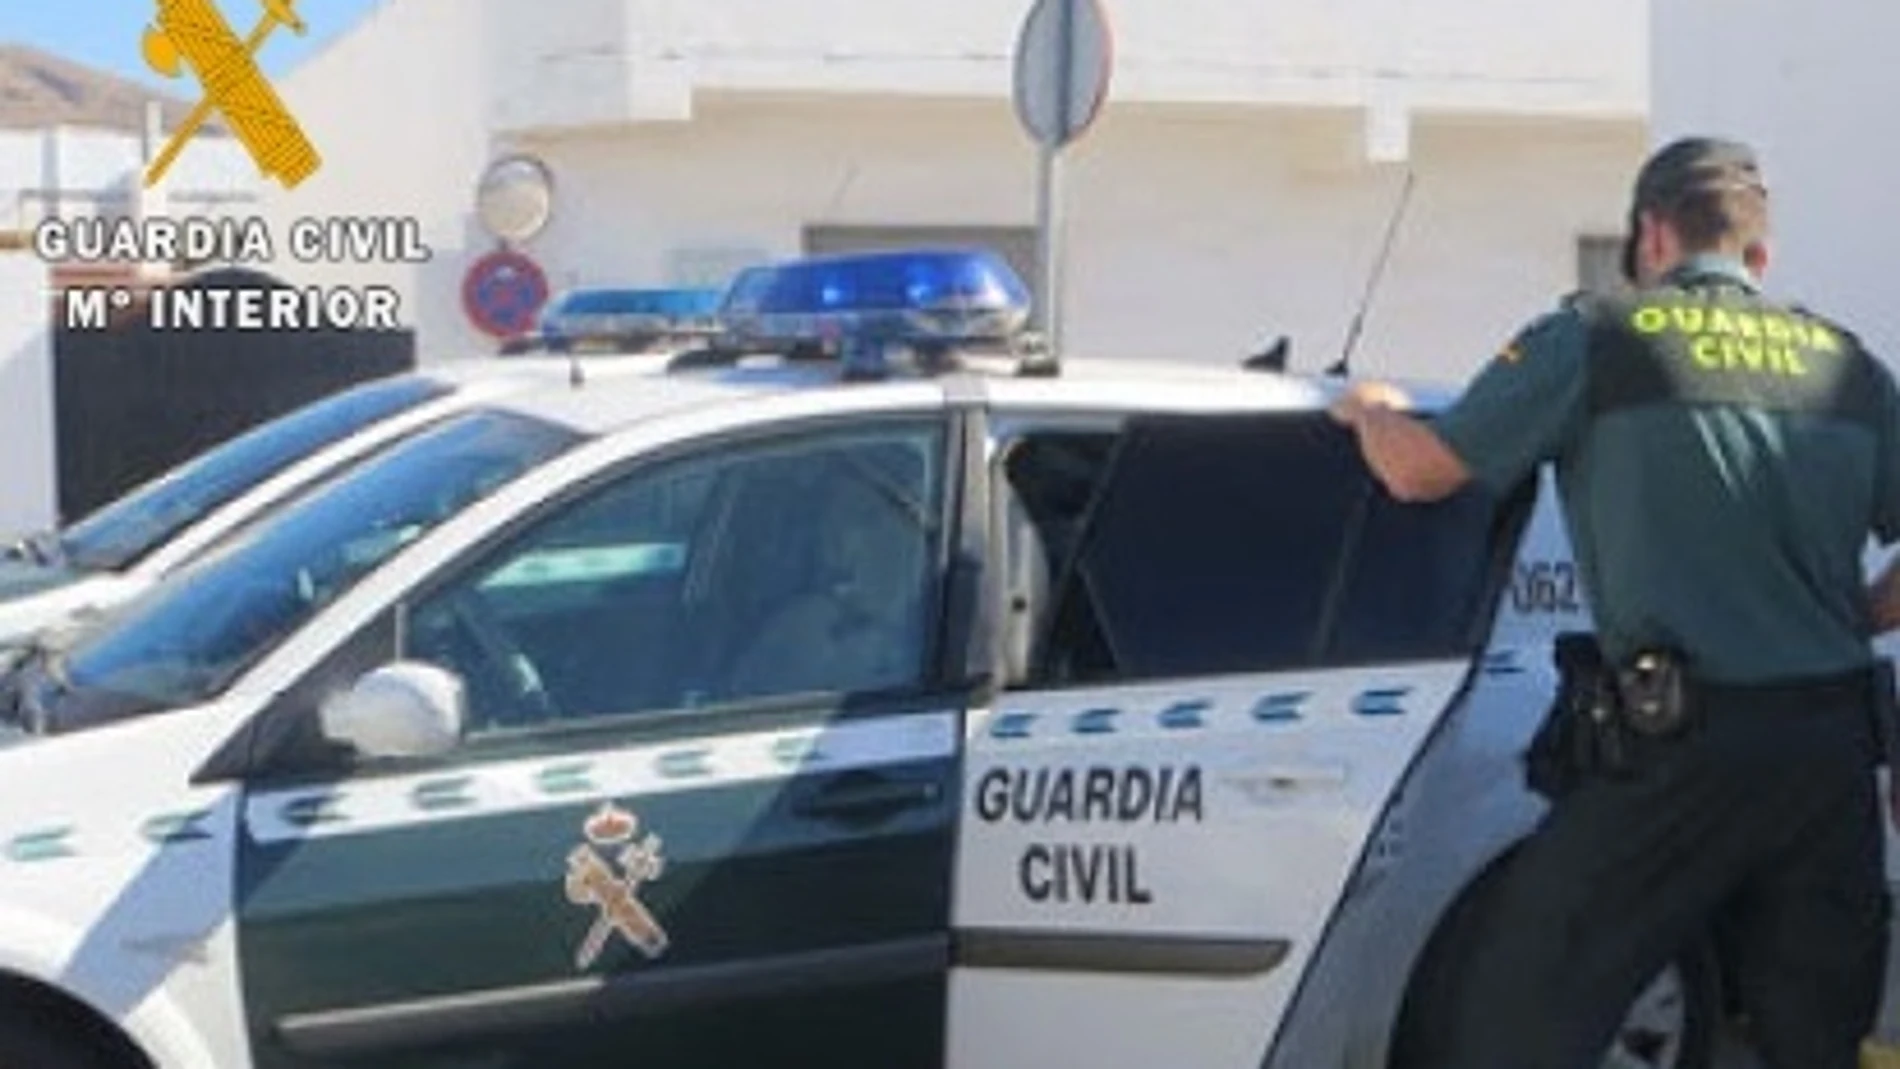 Imagen de un agente y de un vehículo de la Guardia Civil